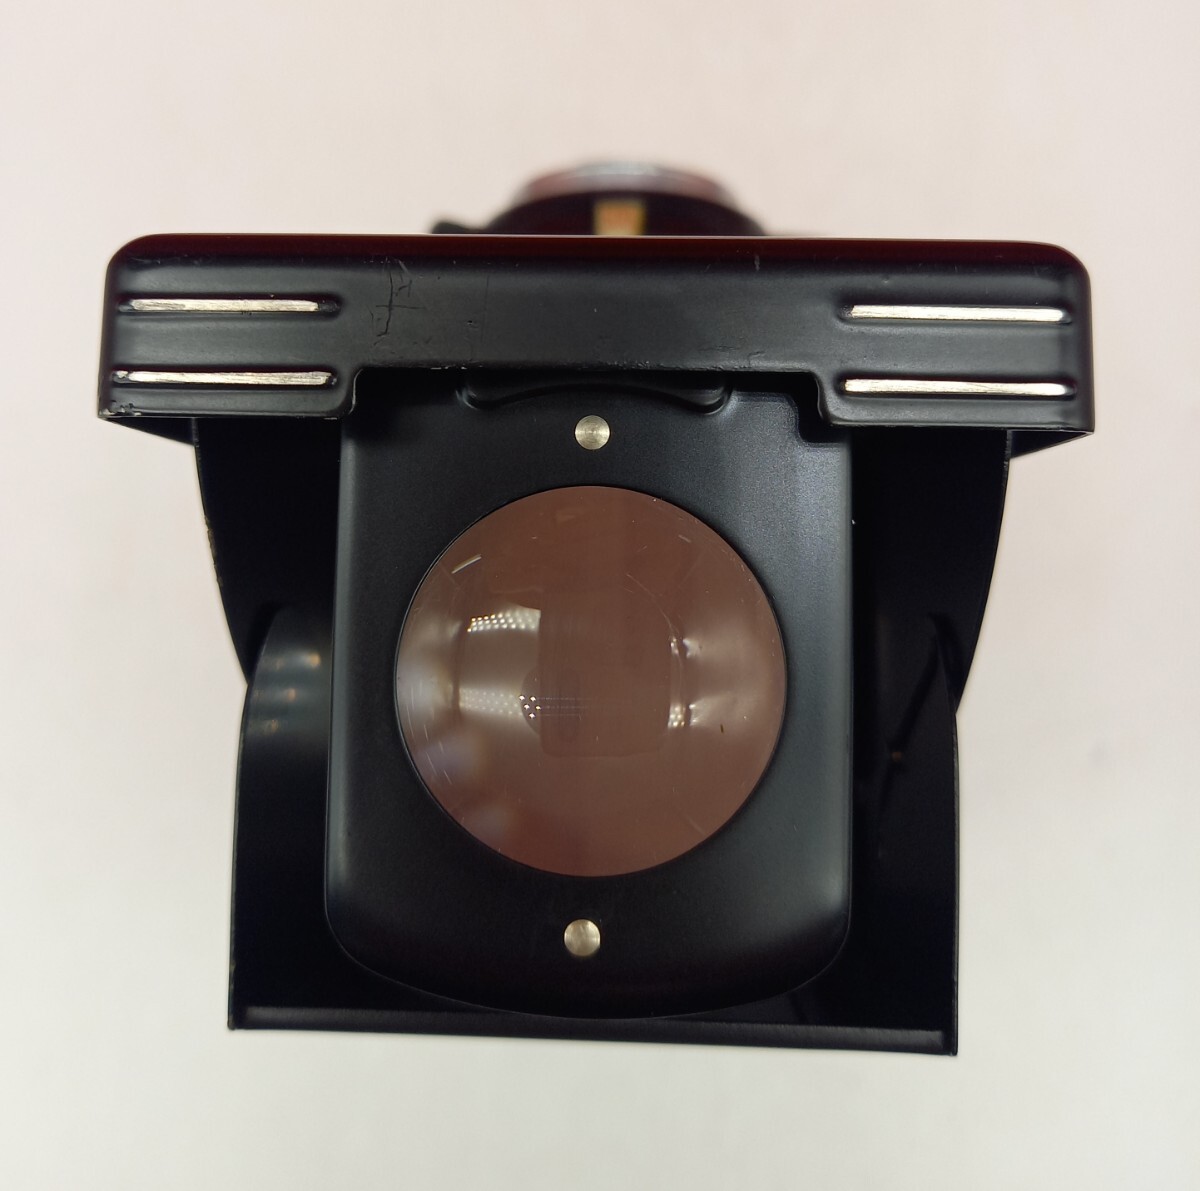 ■ PRIMOFLEX AUTOMAT L オートマット TOPCOR 7.5cm Ｆ3.5 二眼レフカメラ フィルムカメラ プリモフレックス